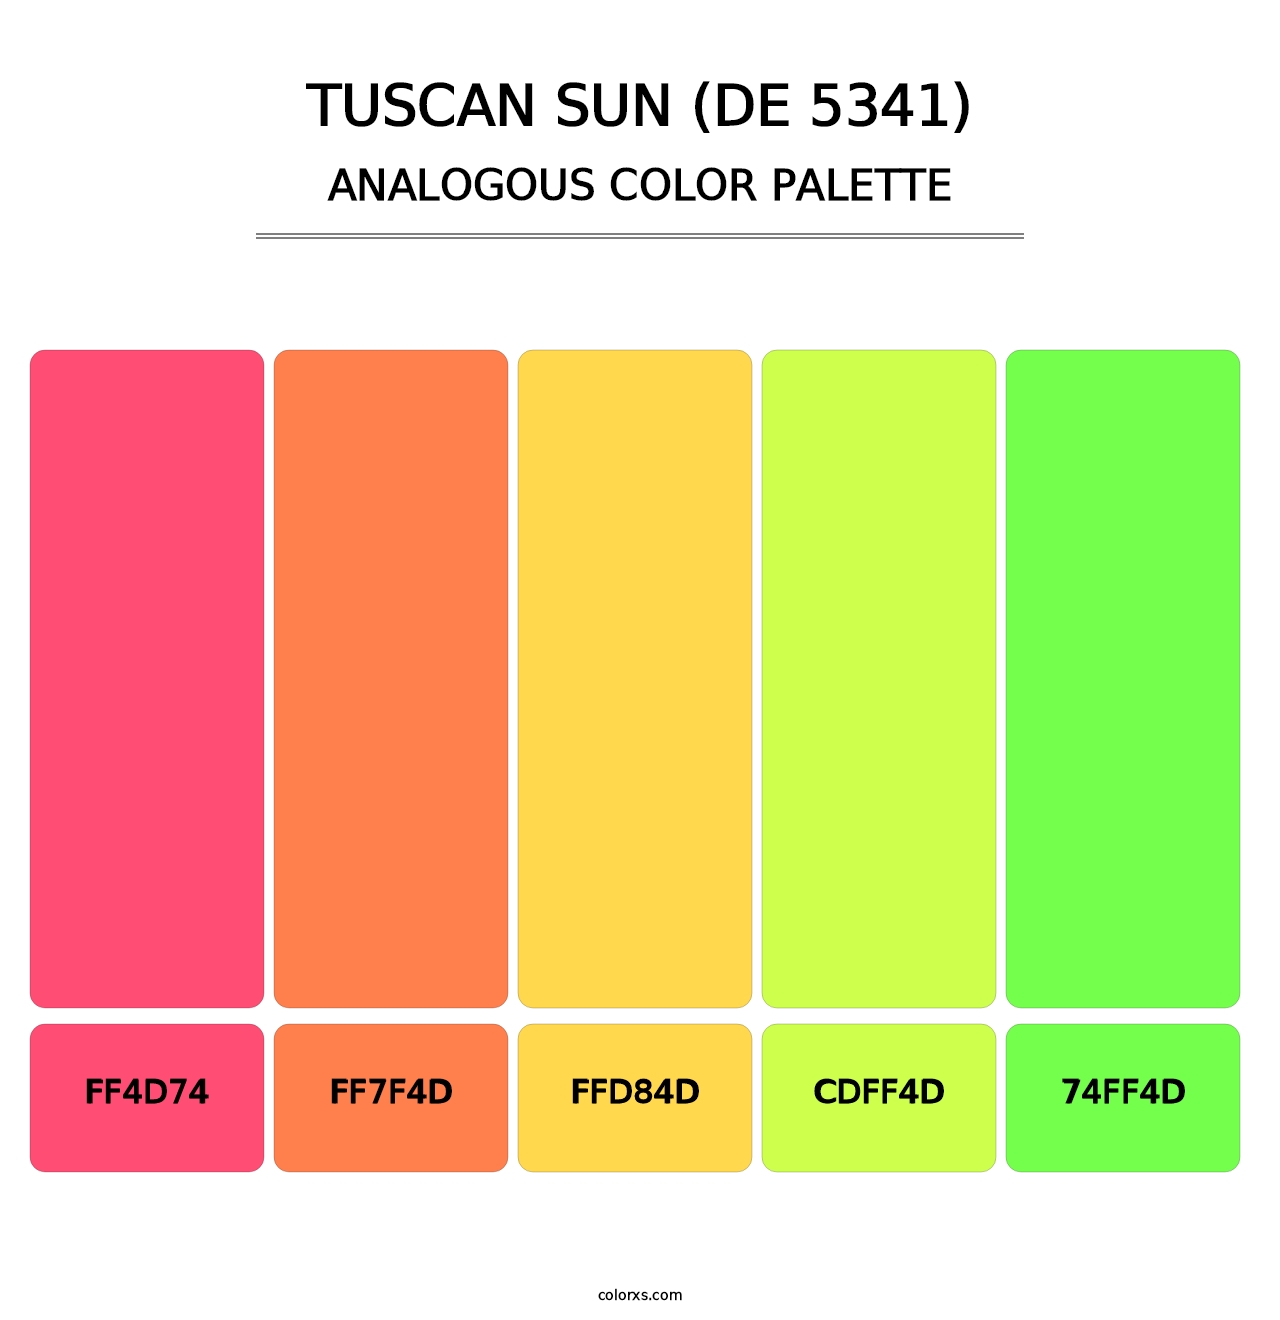 Tuscan Sun (DE 5341) - Analogous Color Palette